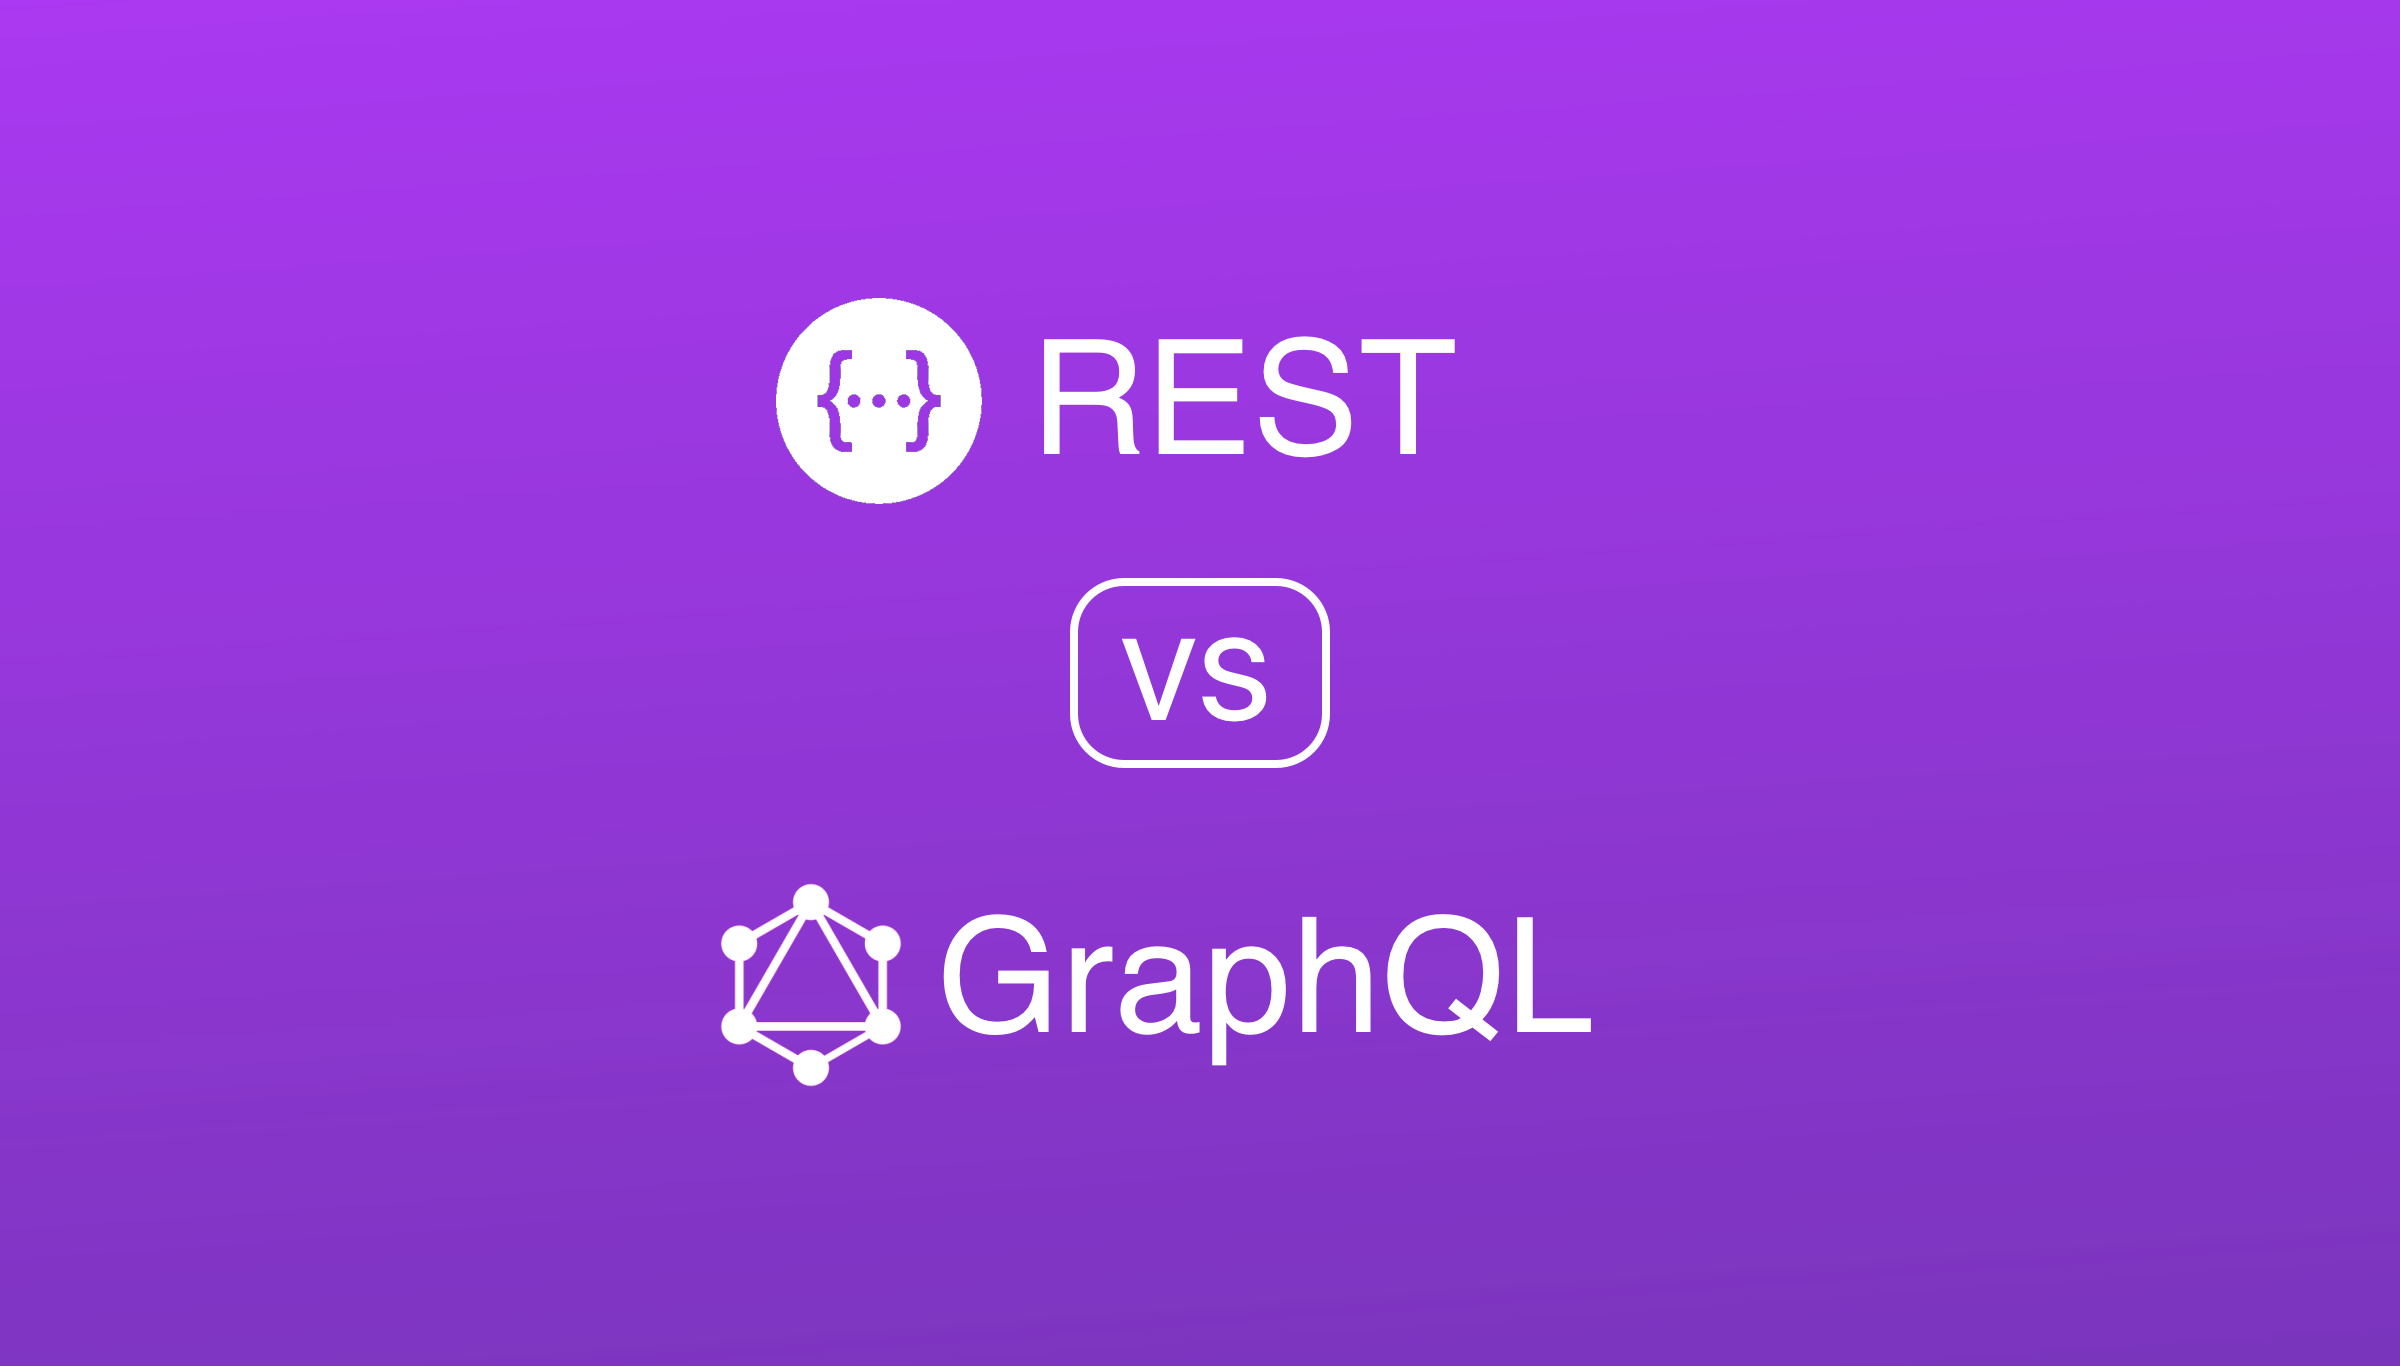 Comparing REST vs. GraphQL